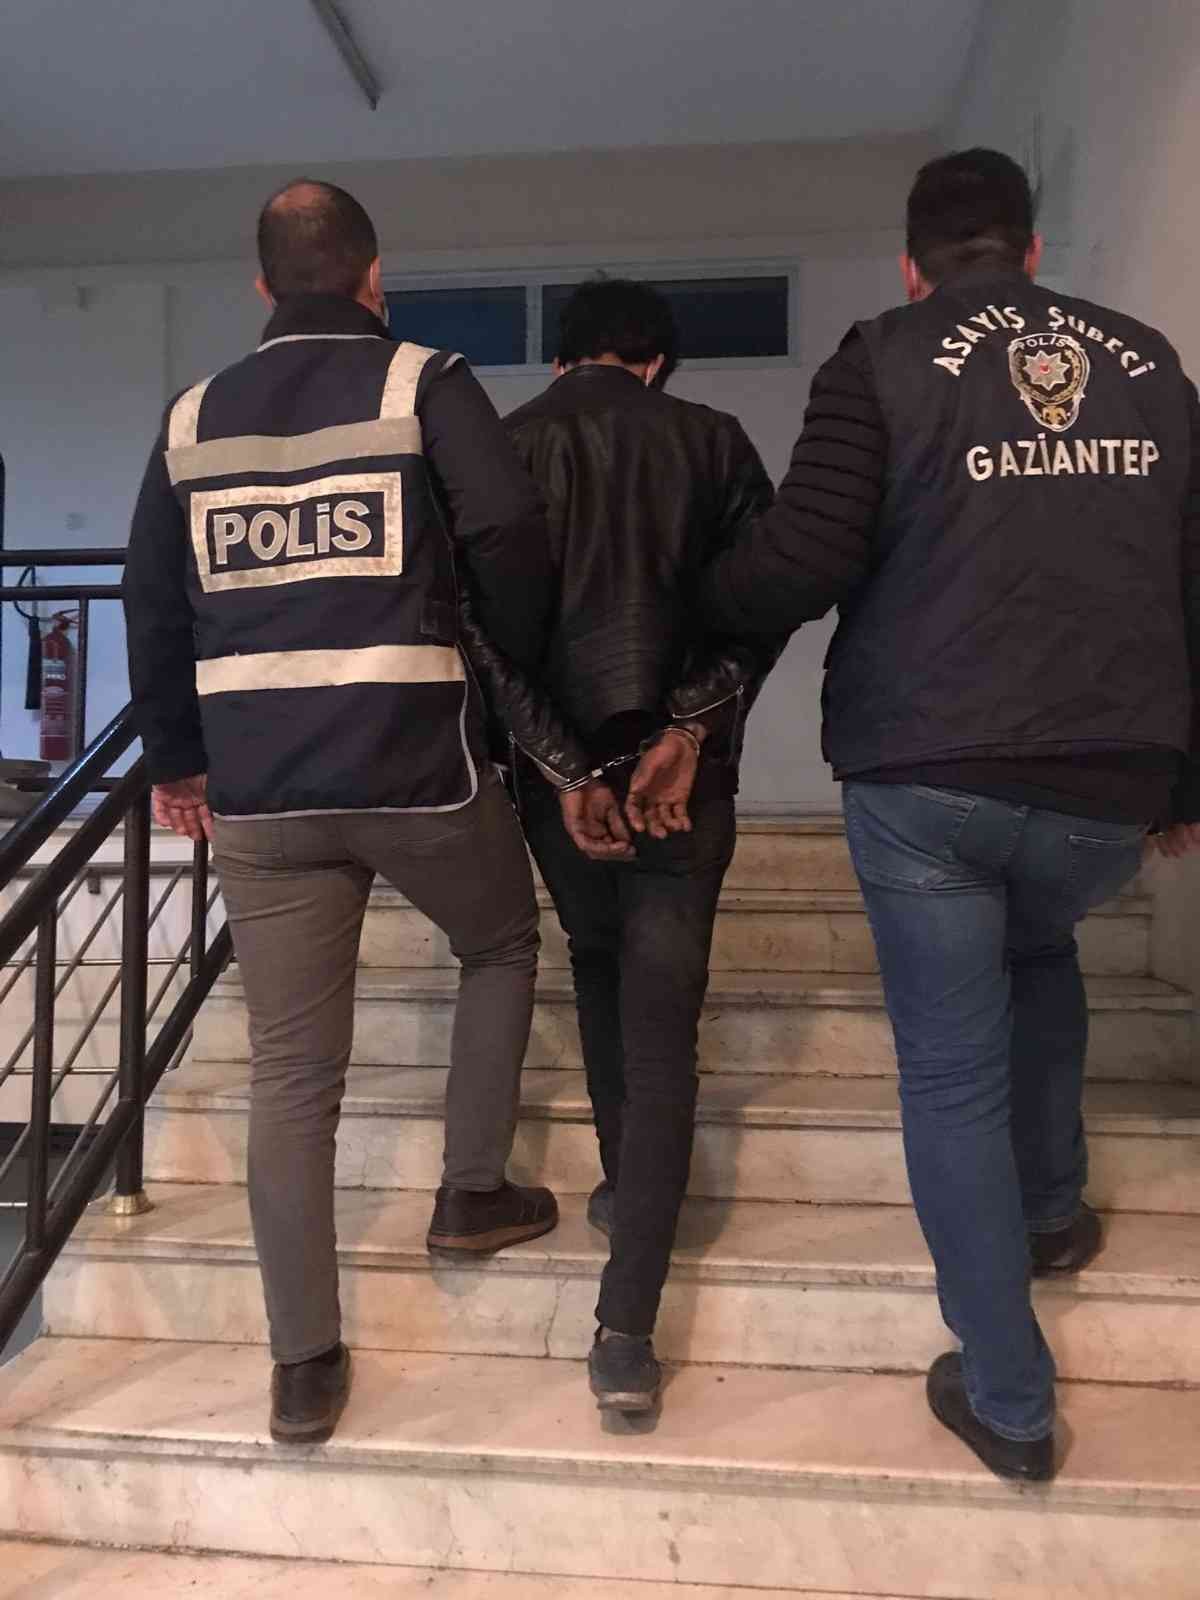 Gaziantep’te Aile Sağlığı Merkezine zarar veren şüpheli yakalandı #gaziantep